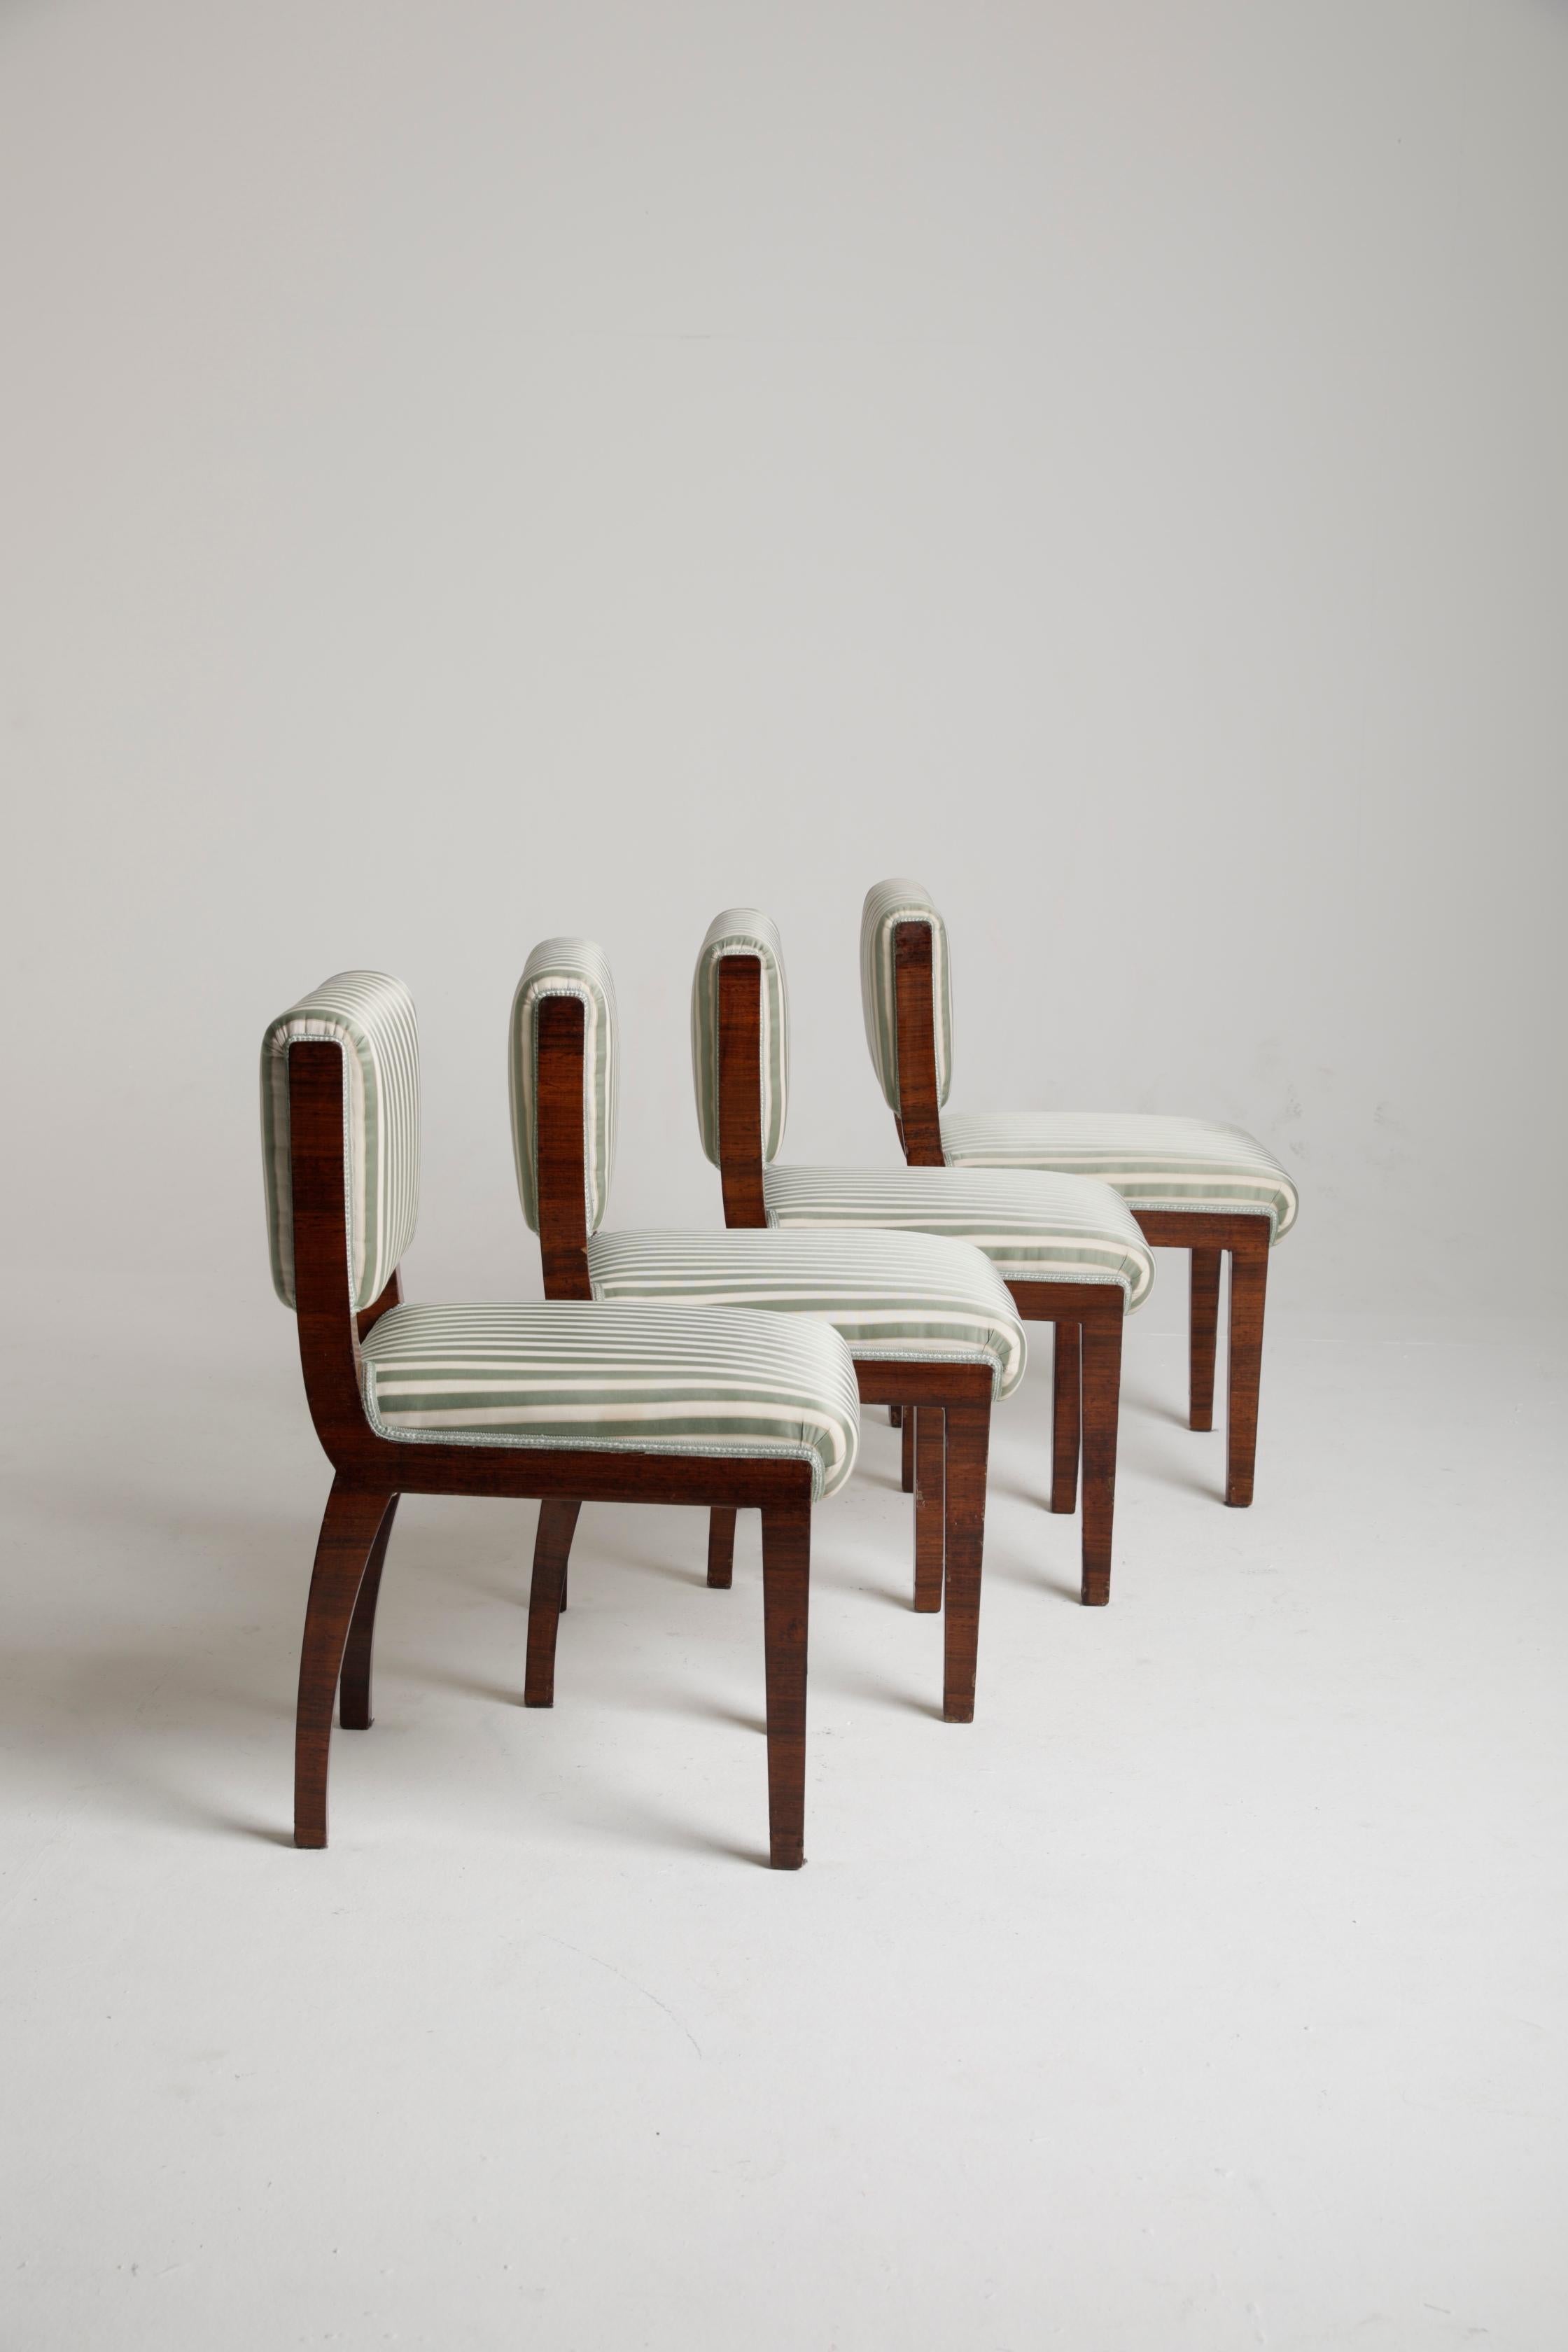 Ensemble de 4 chaises art déco en bois et tissu provenant d'une importante villa italienne, attribuable au célèbre architecte et designer italien Melchiorre Bega. Il s'agit d'un ensemble vraiment raffiné, capable de bien s'adapter à un contexte